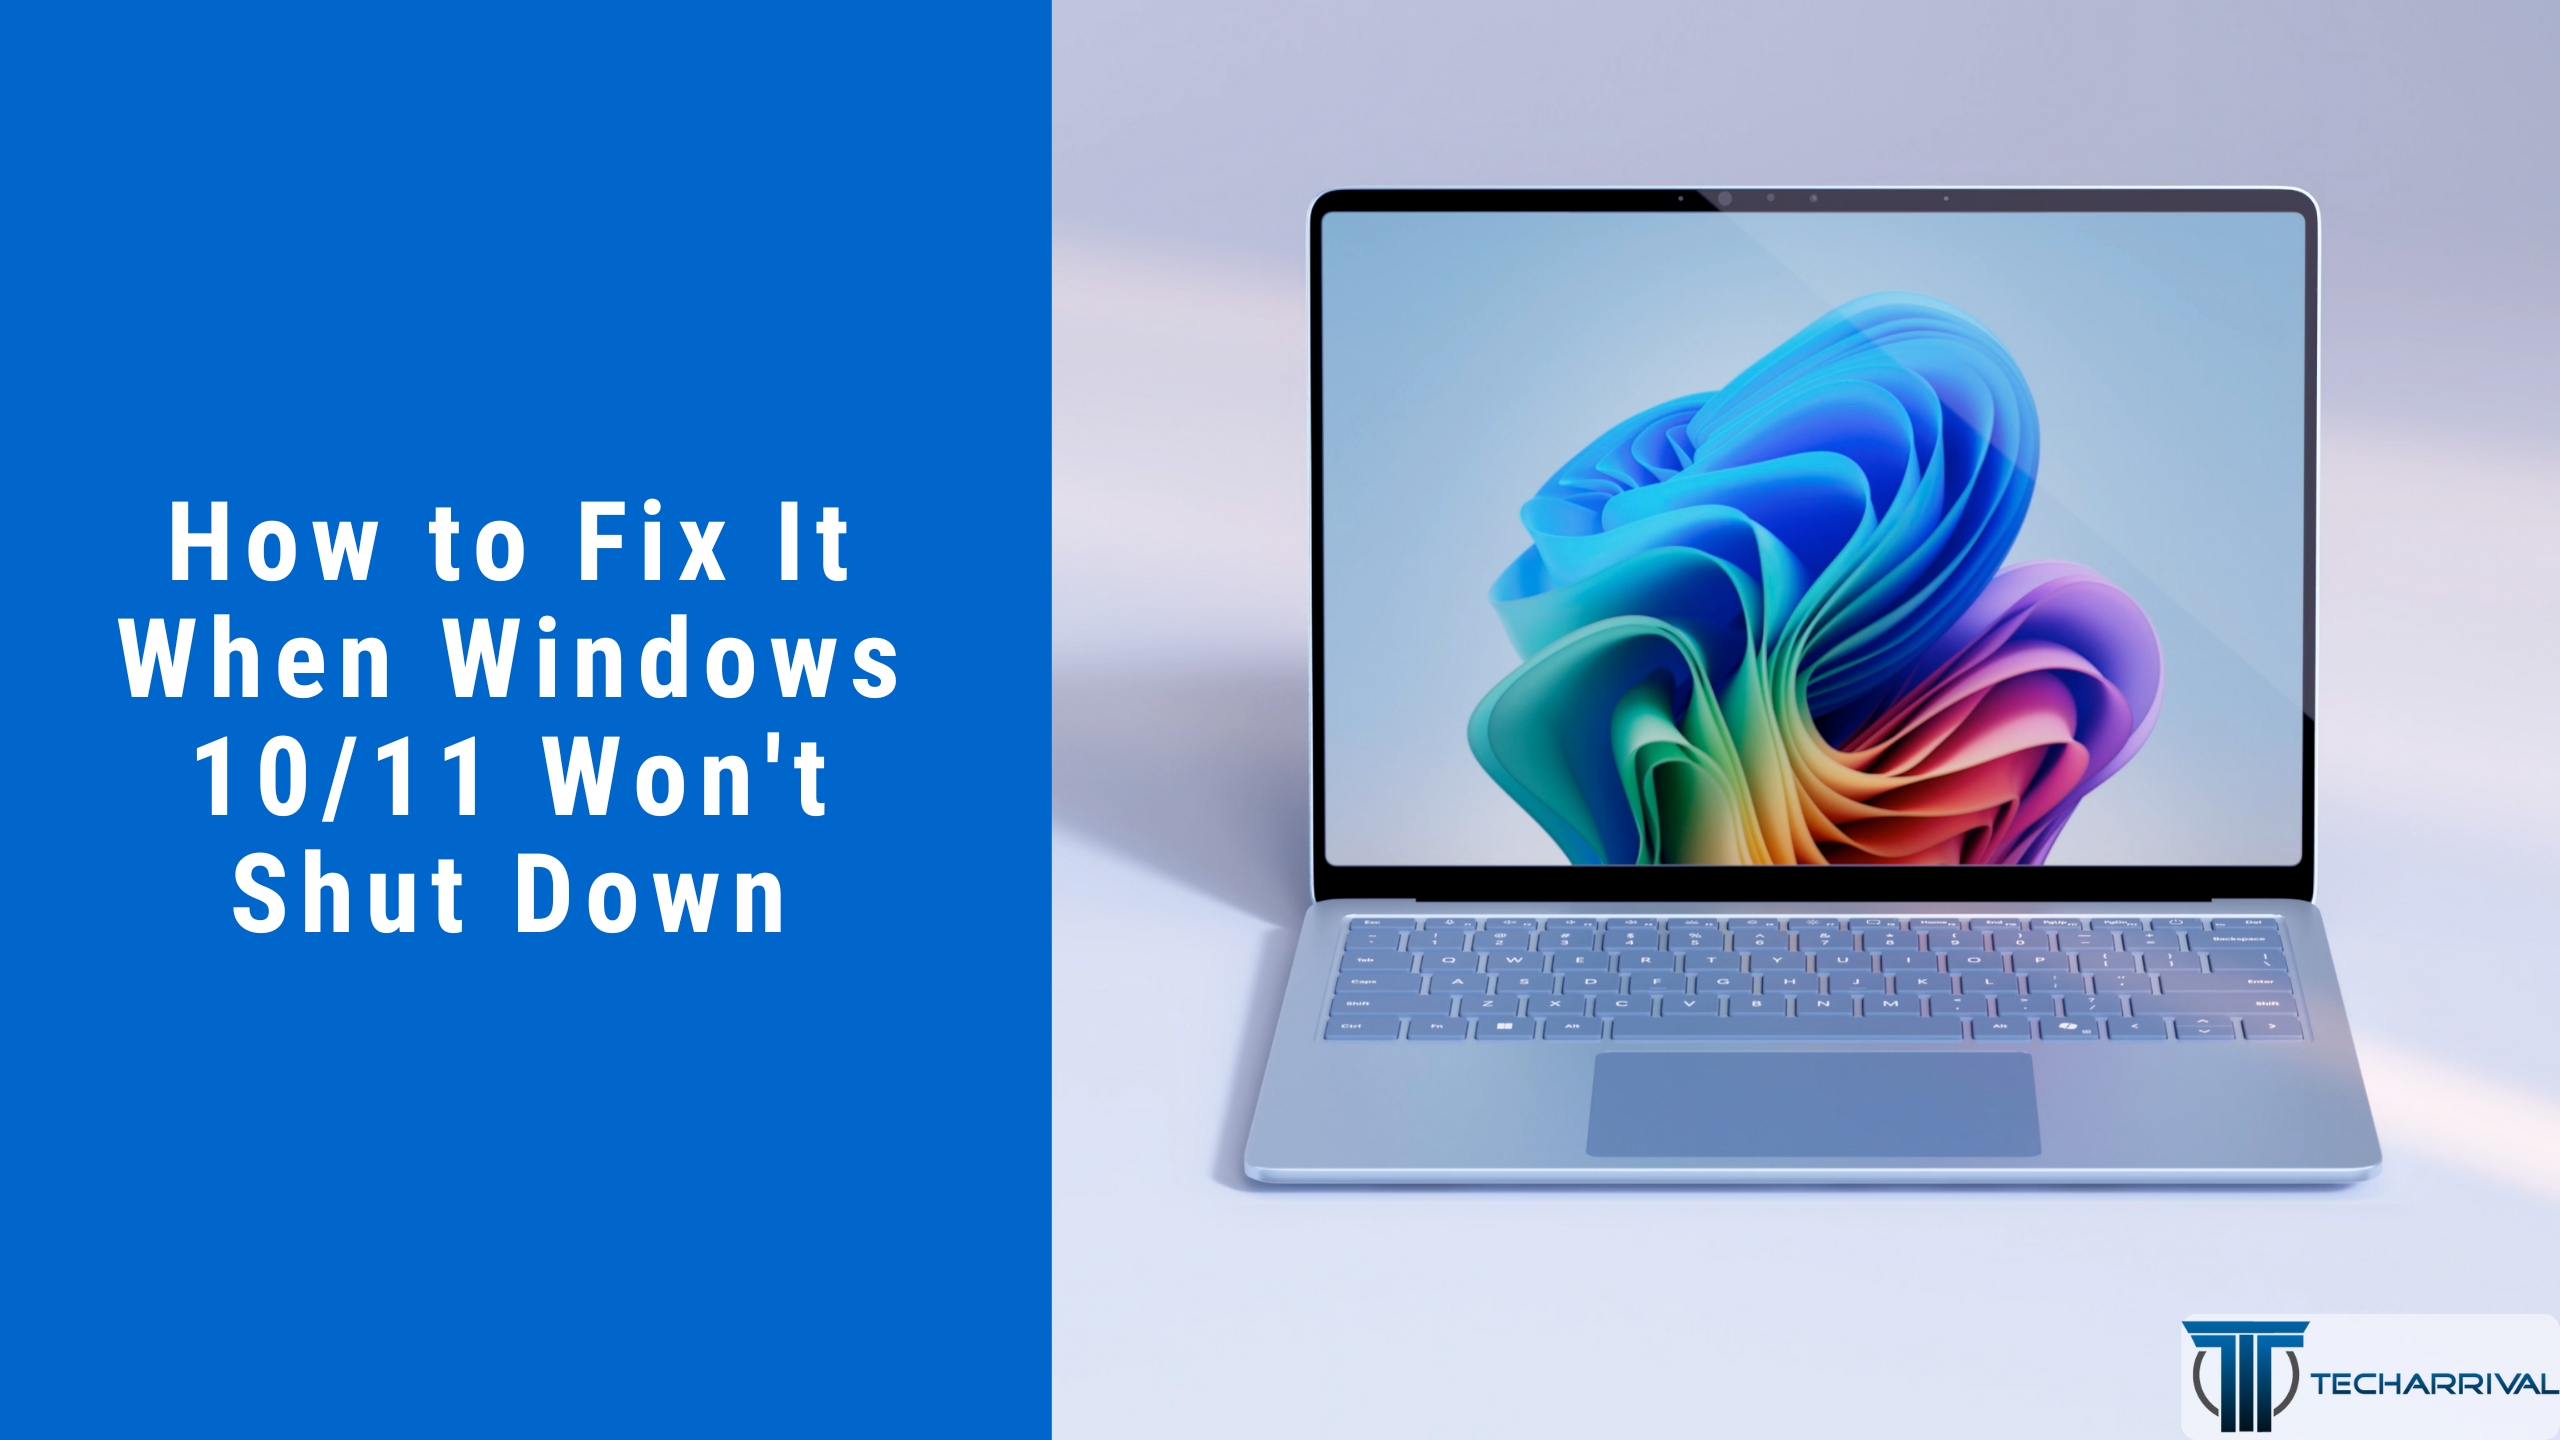 How to Fix It When Windows 10/11 Won’t Shut Down